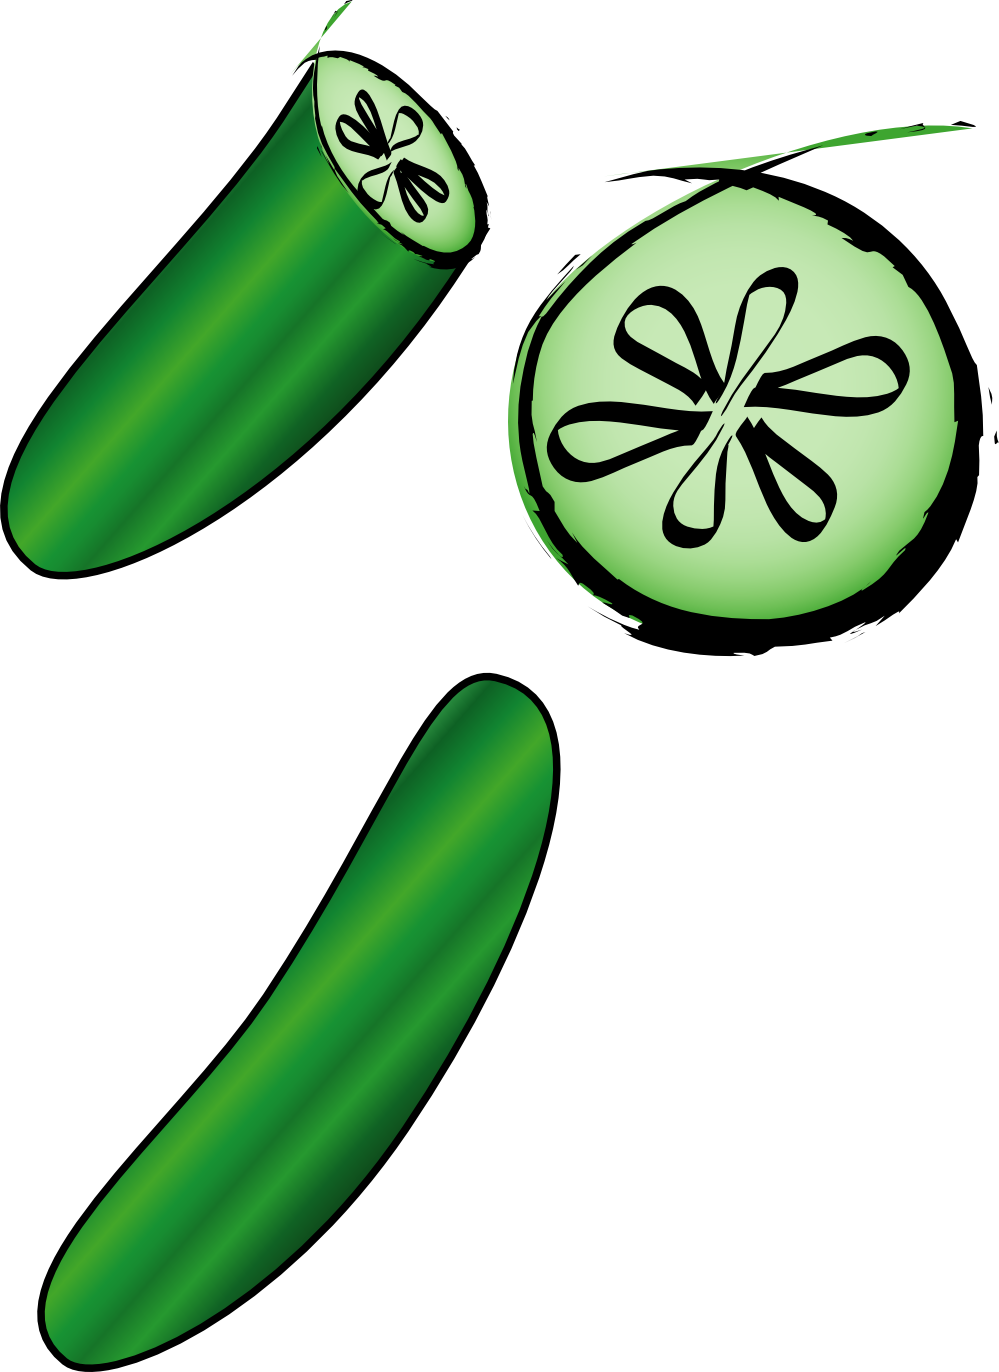 Cucumber clipart cucumberclip